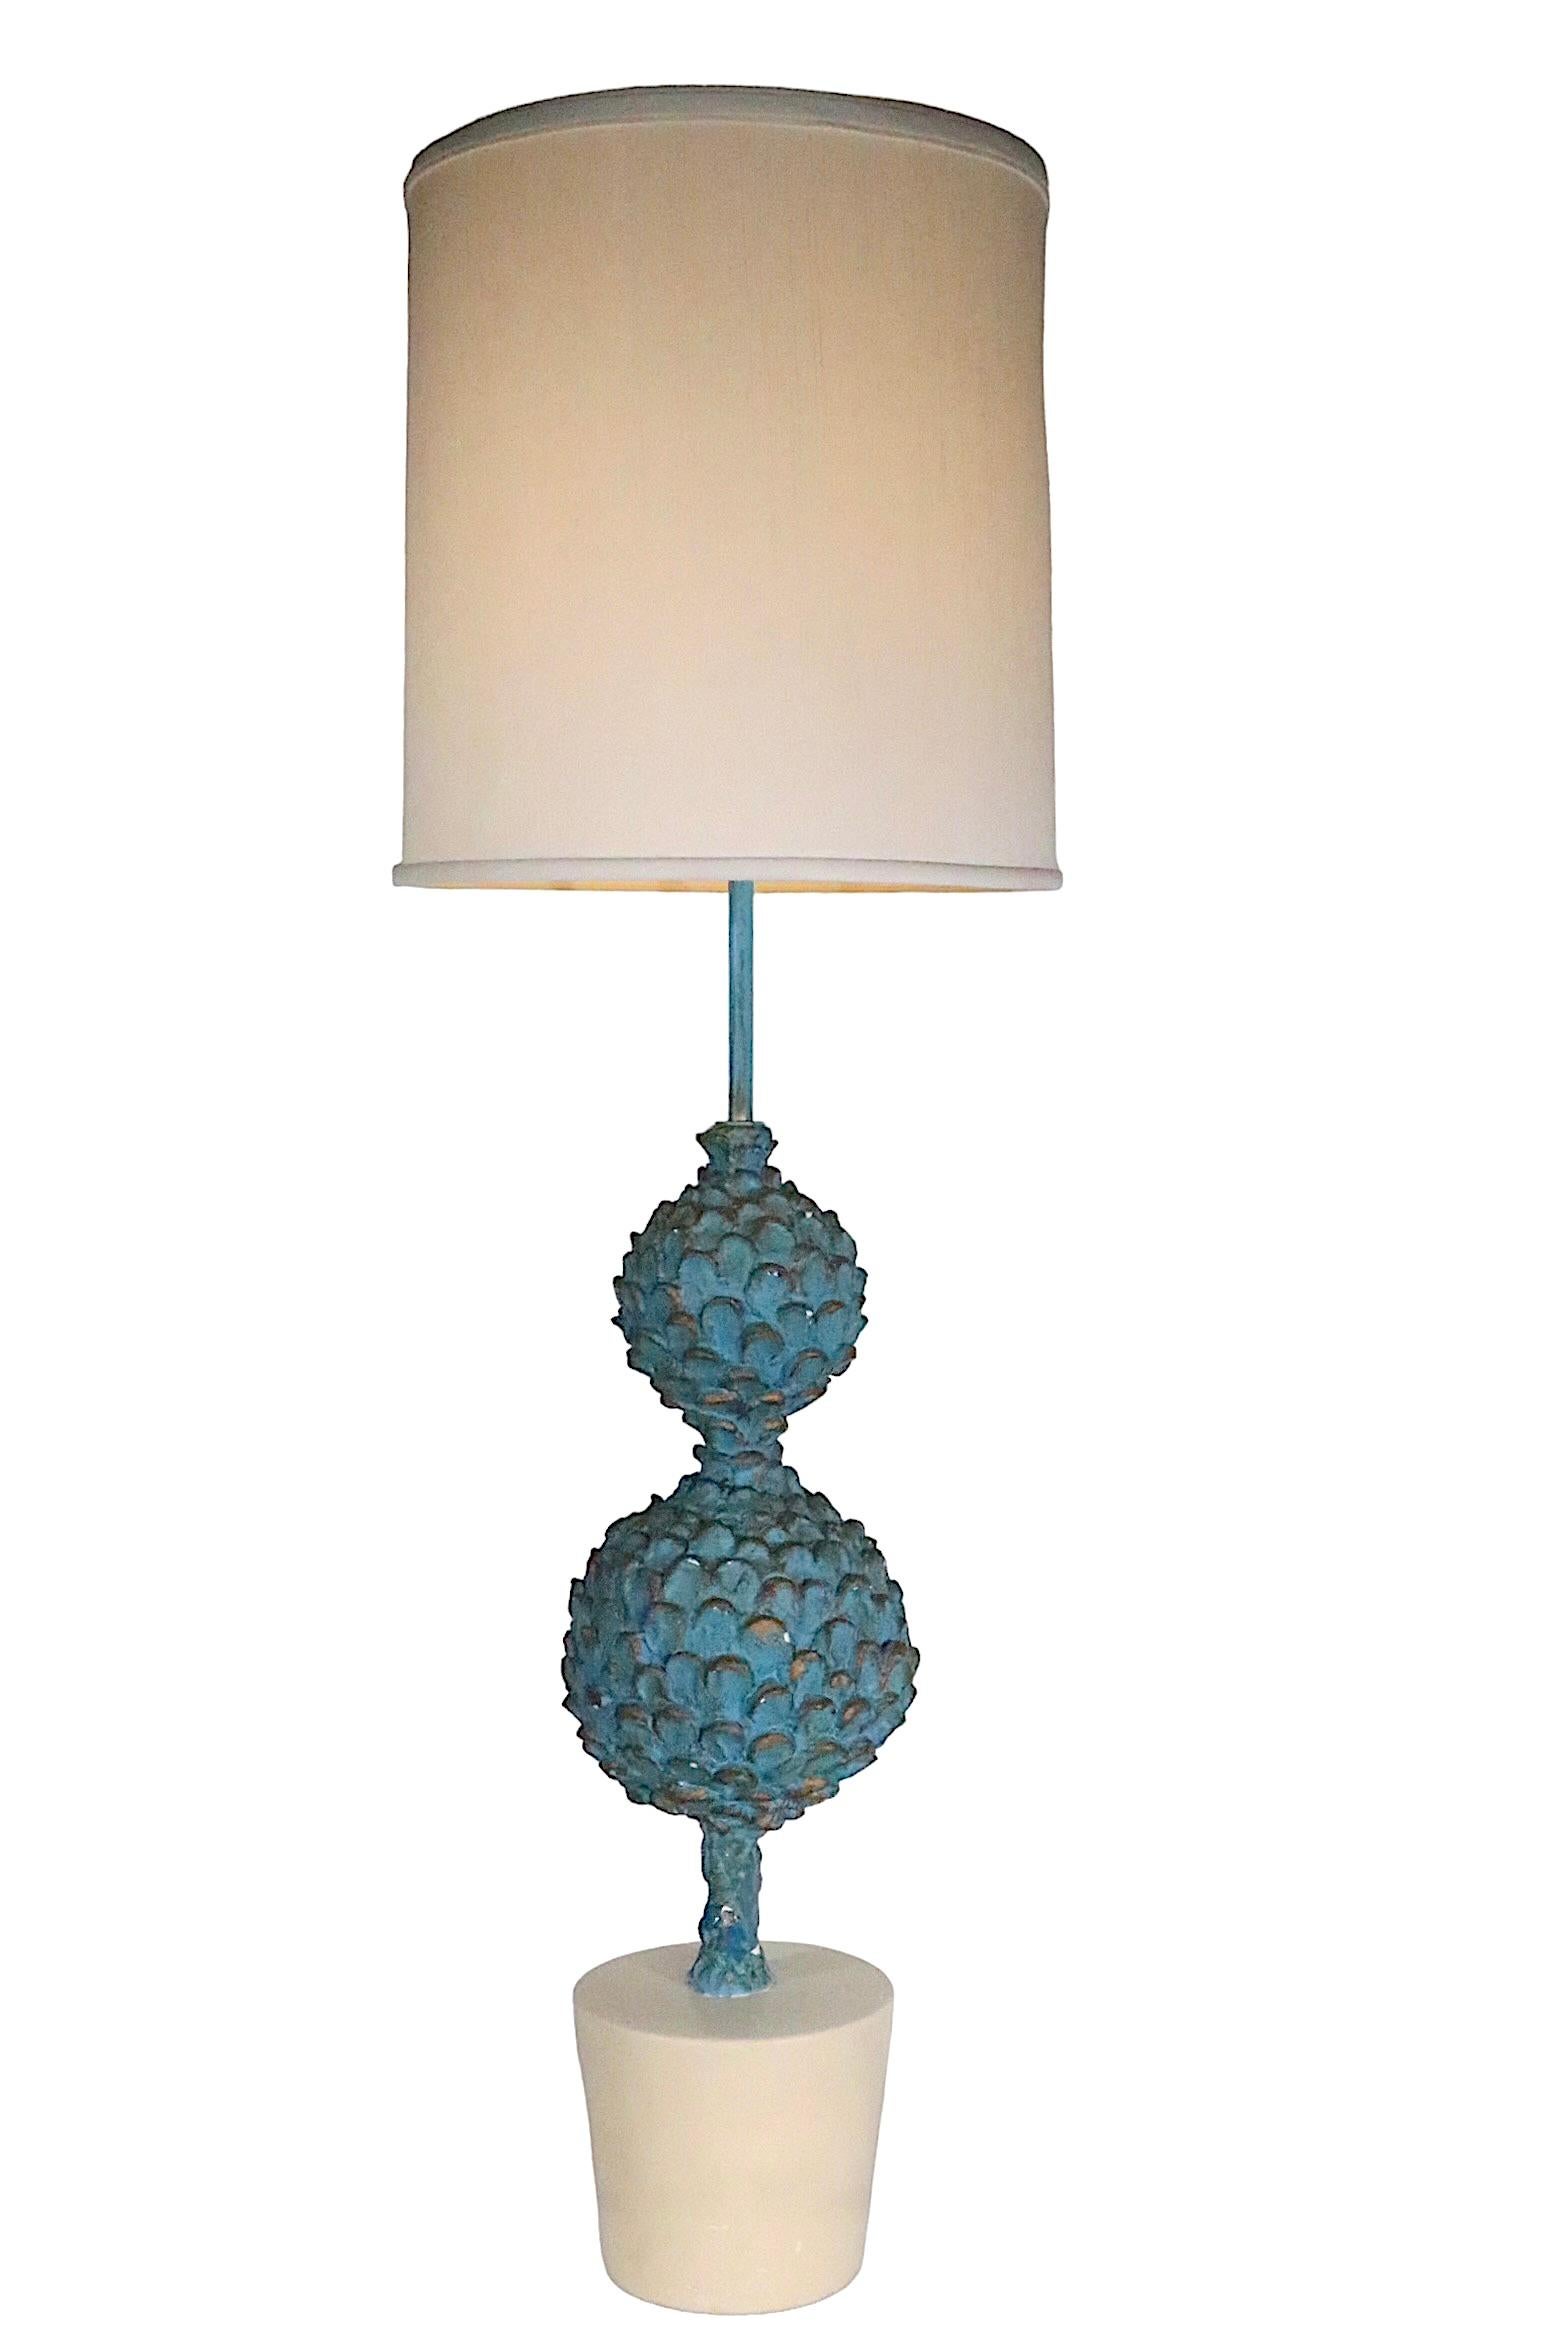 Large Decorative  Artichoke Plant Form Table Lamp  For Sale 8